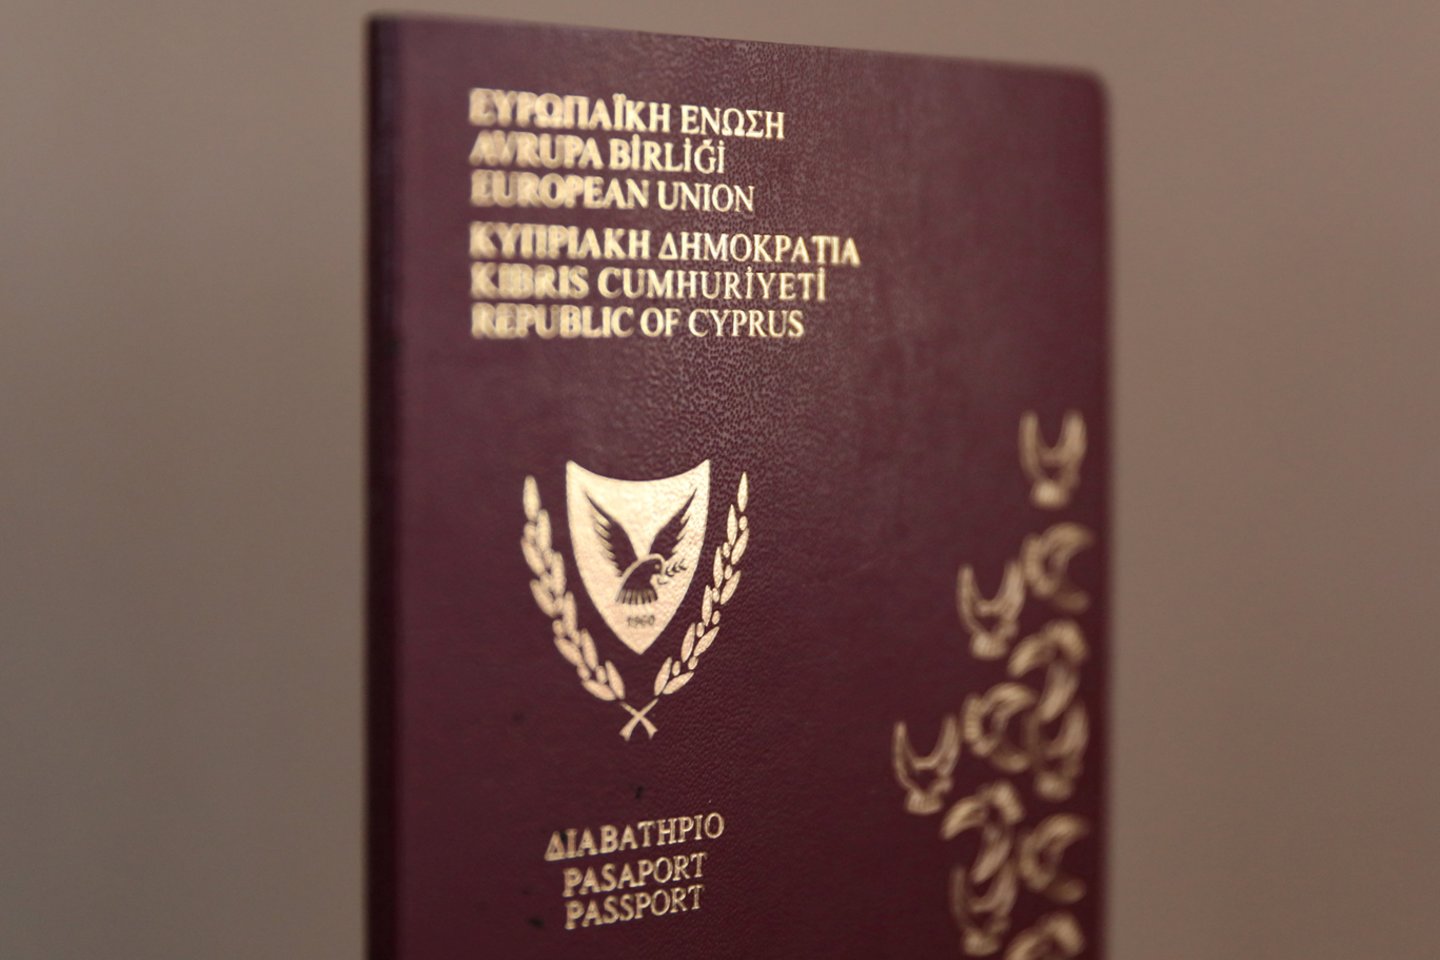 Kipras, reaguodamas į pinigų plovimo skandalą, susijusį su neteisėtu ar abejotinu pilietybės suteikimu, atėmė pilietybę iš 232 asmenų, trečiadienį pranešė vietos laikraštis.<br>Reuters/Scanpix nuotr.